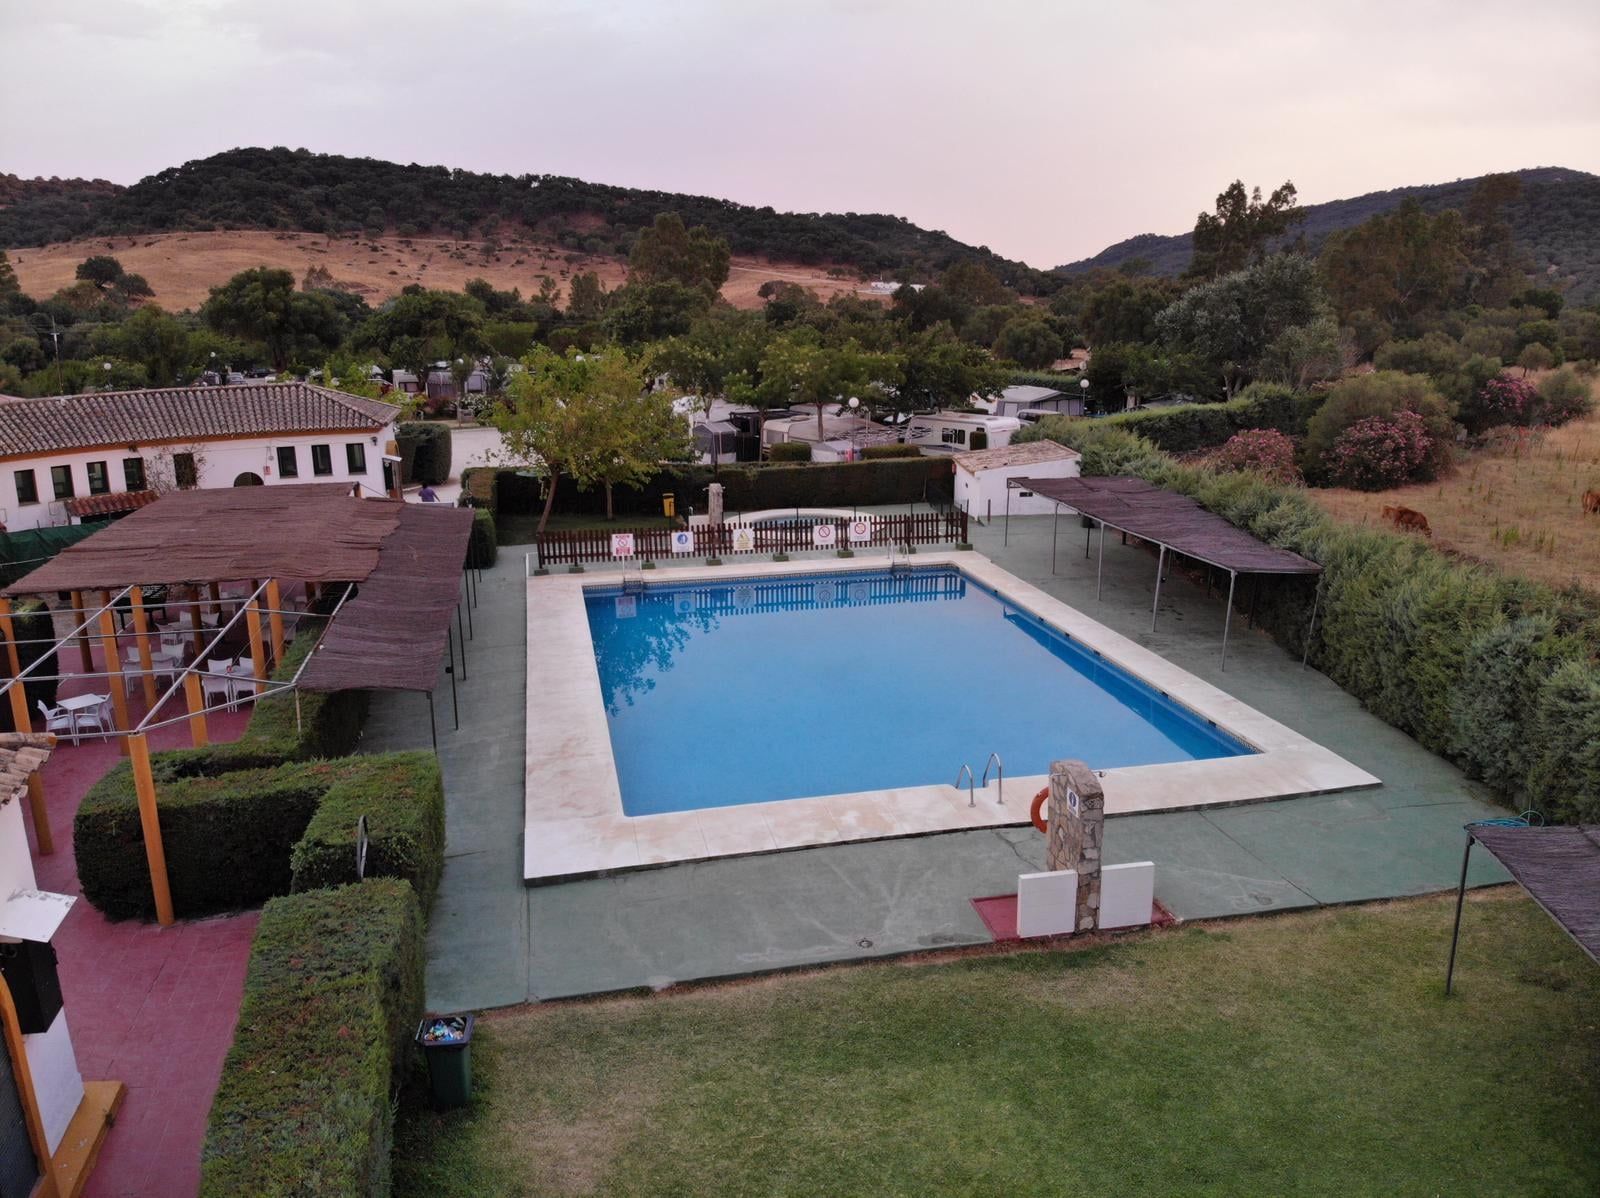 El camping de Los Gazules: veranear en Los Alcornocales. Vista general con la piscina como referente.